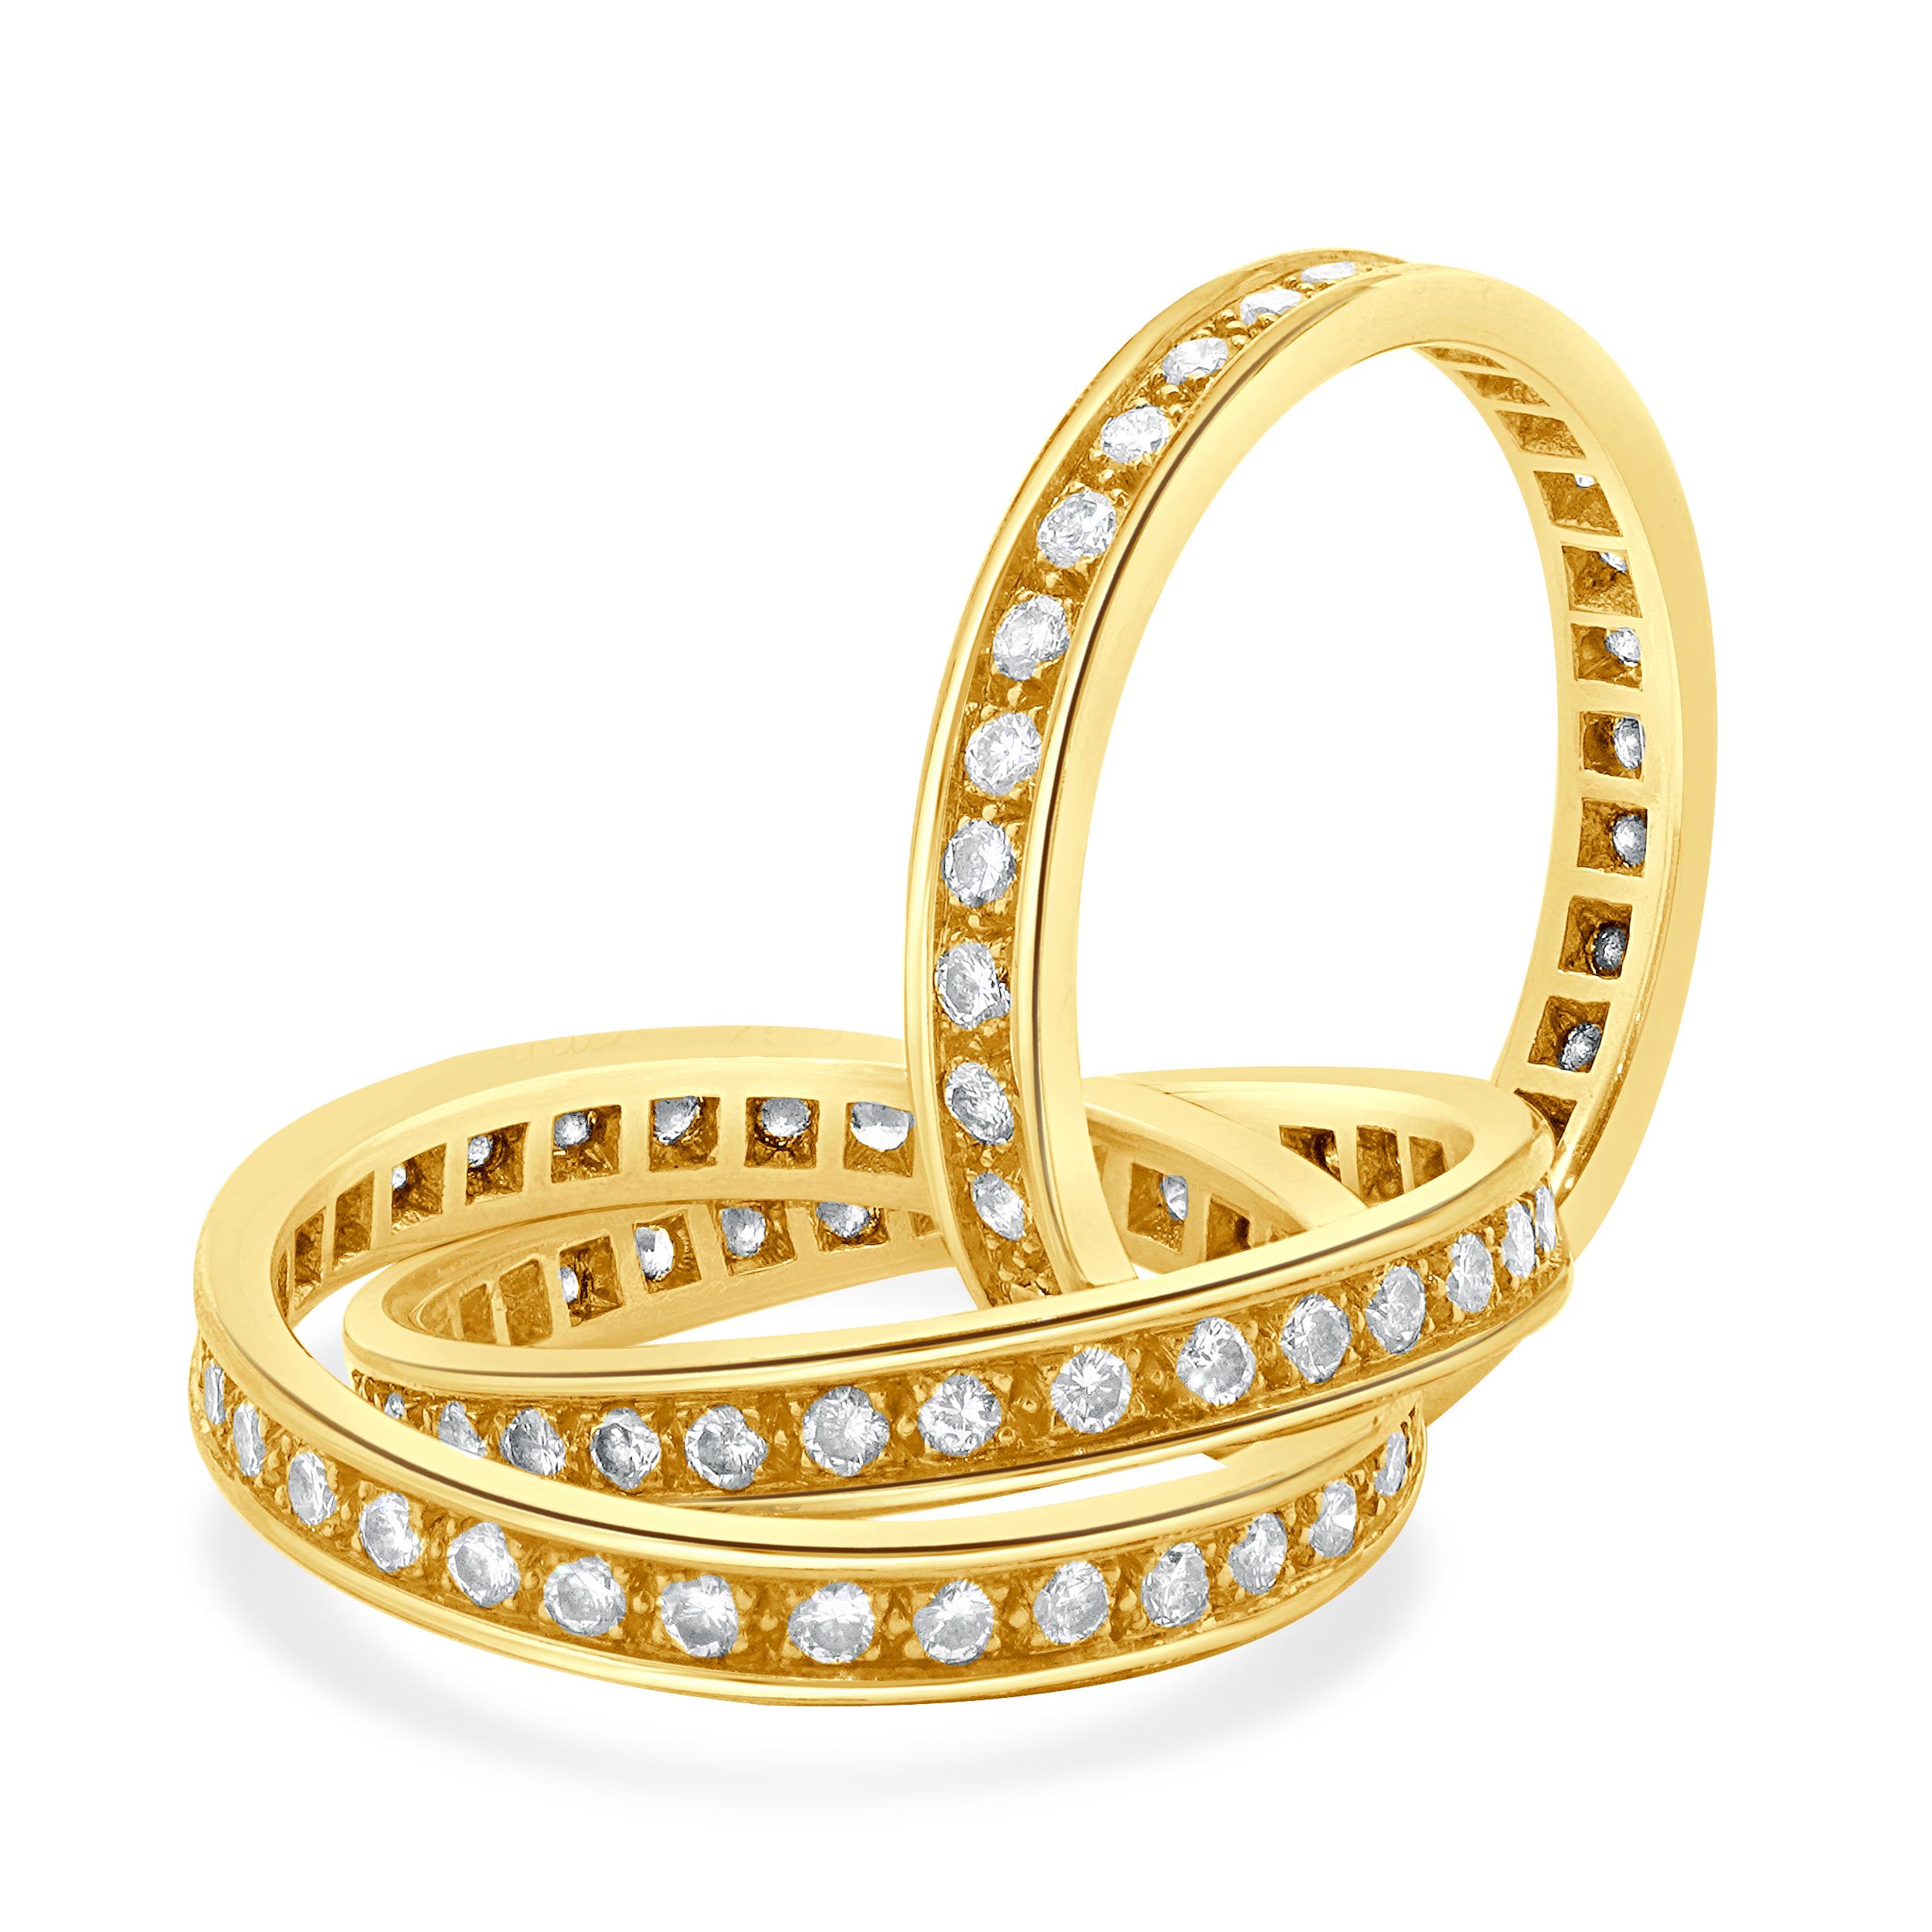 Créateur : Cartier
Matériau : Or jaune 18K
Diamant : 96 diamants ronds de taille brillant = 1,92cttw
Couleur : G
Clarté : VS1-2
Numéro de série 670XXX
